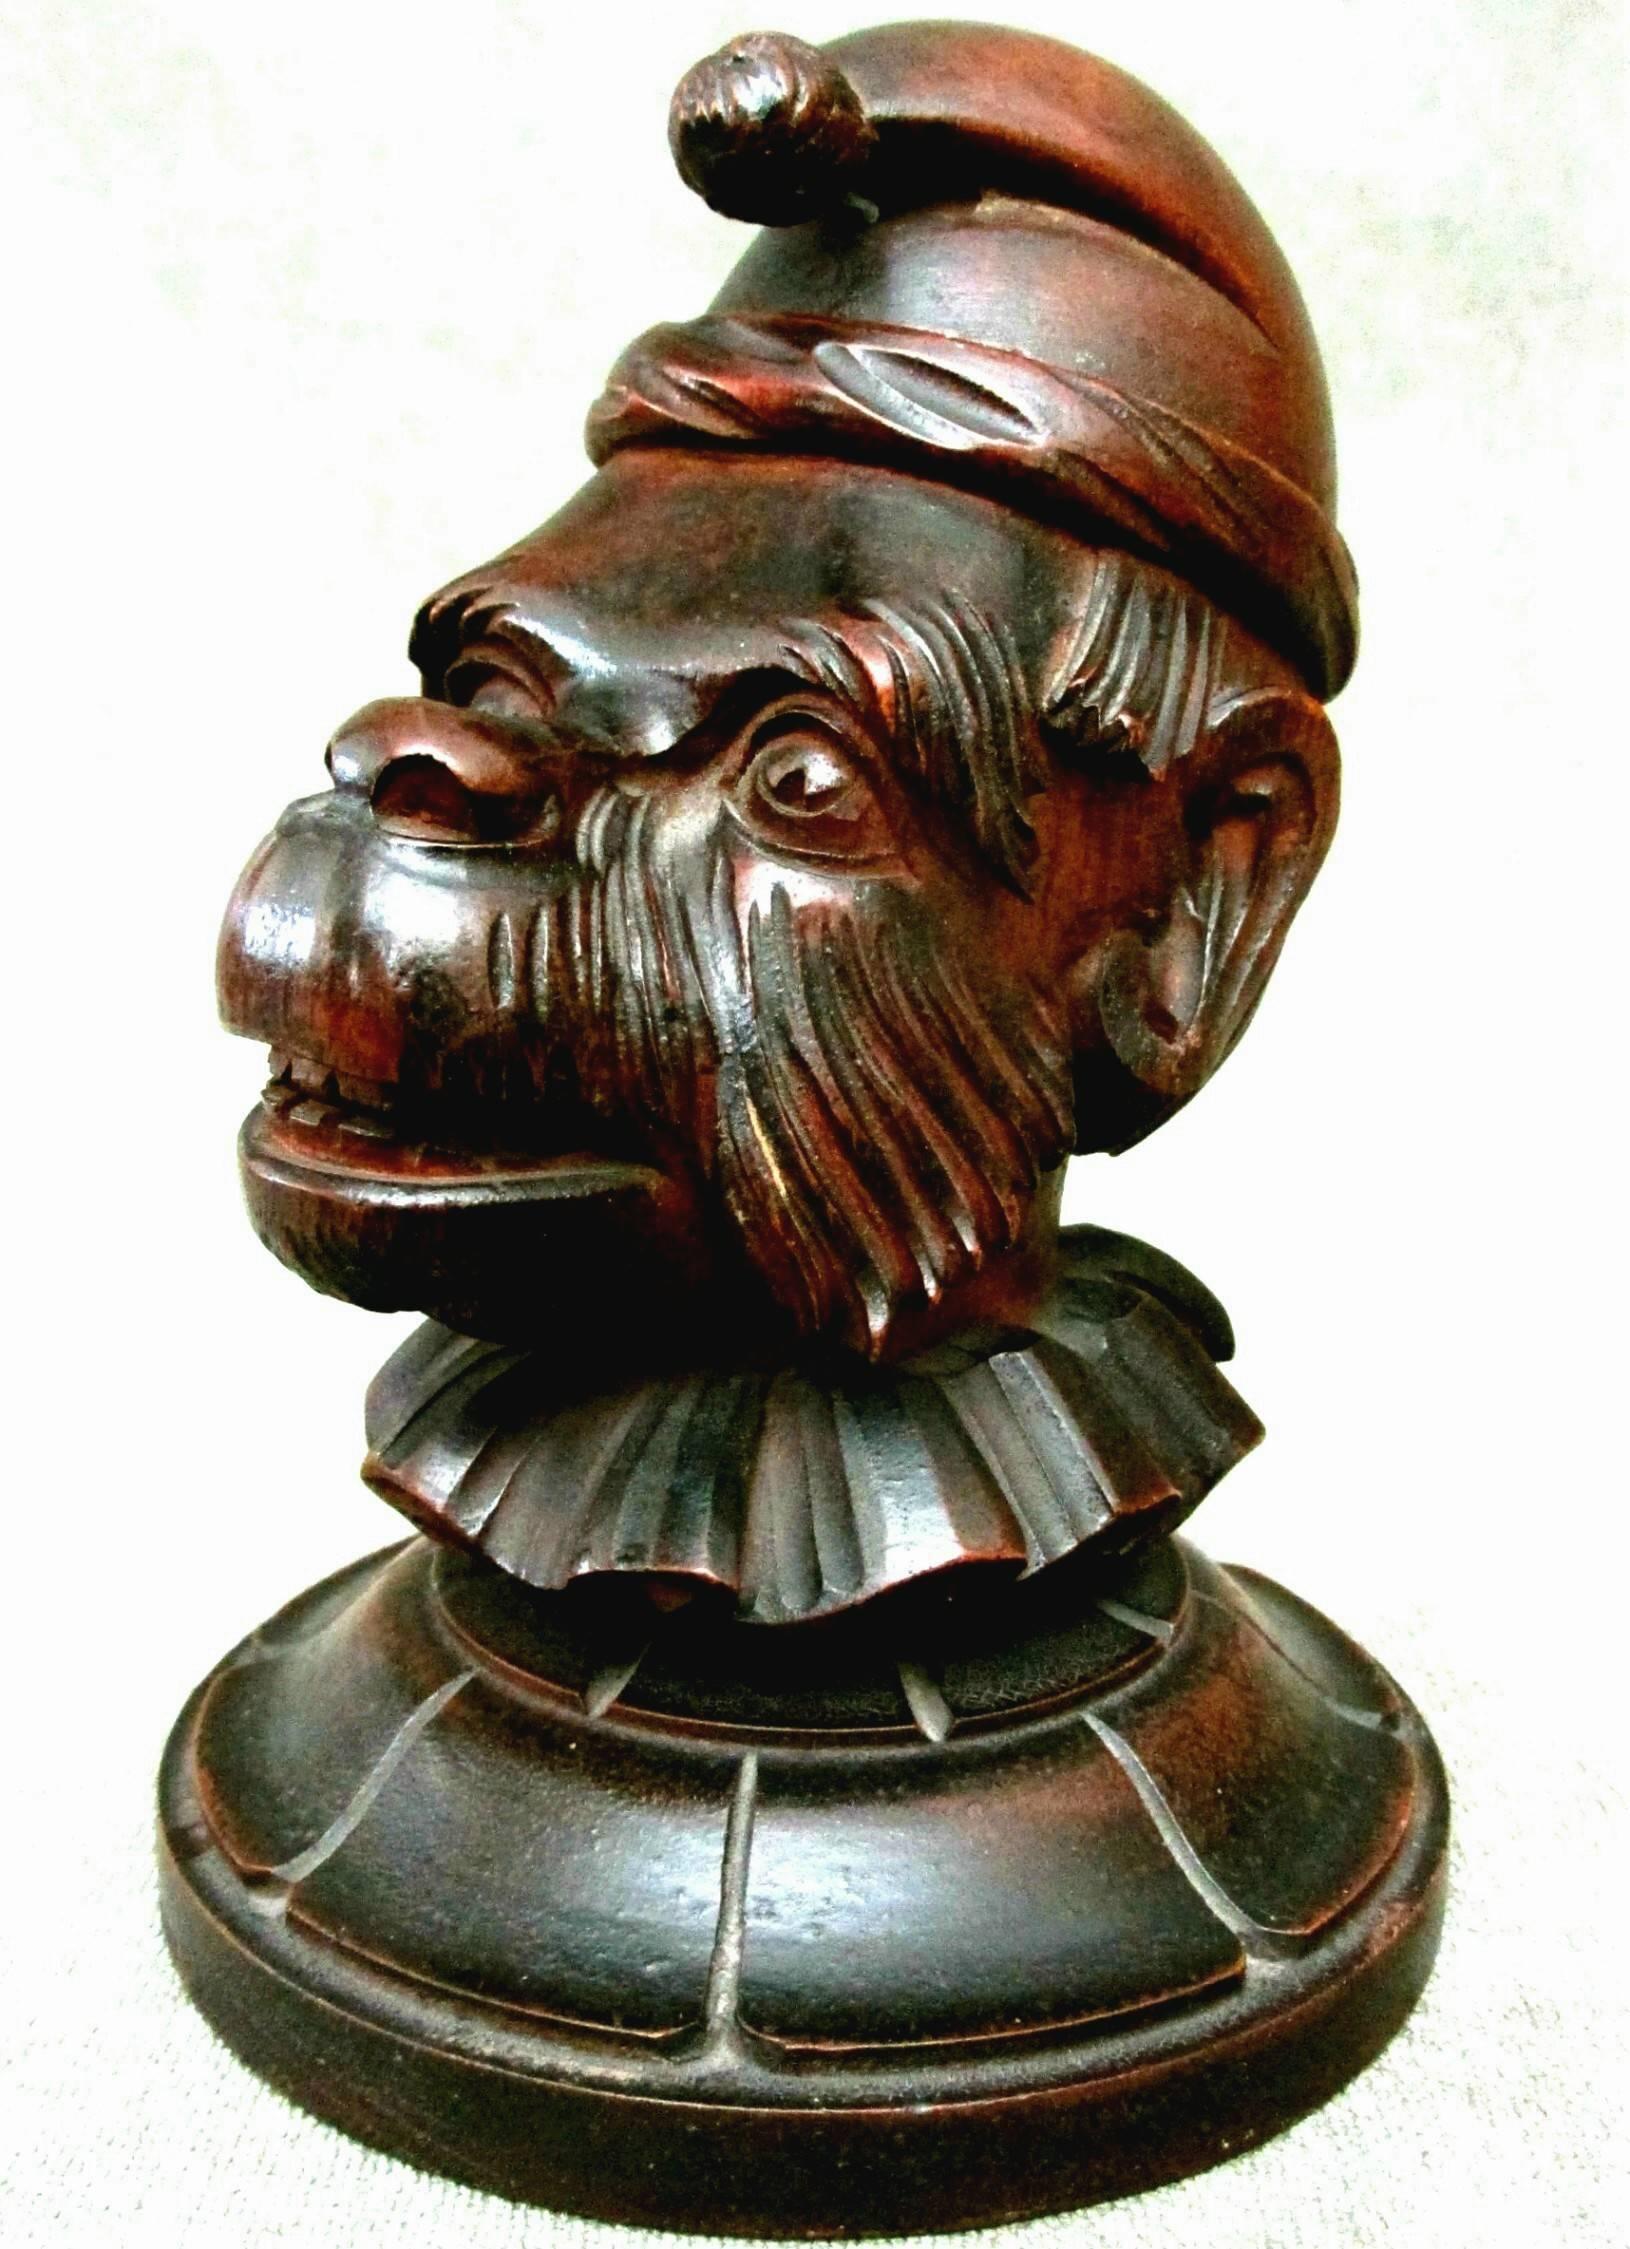 Ein sehr ungewöhnlicher, wenn nicht sogar einzigartiger Tabakhumidor, der einen realistisch geschnitzten Affen zeigt, der eine Mütze und einen zerzausten Kragen trägt, das Gesicht mit einem amüsanten, ausdrucksstarken Grinsen, wobei sich die Klappe